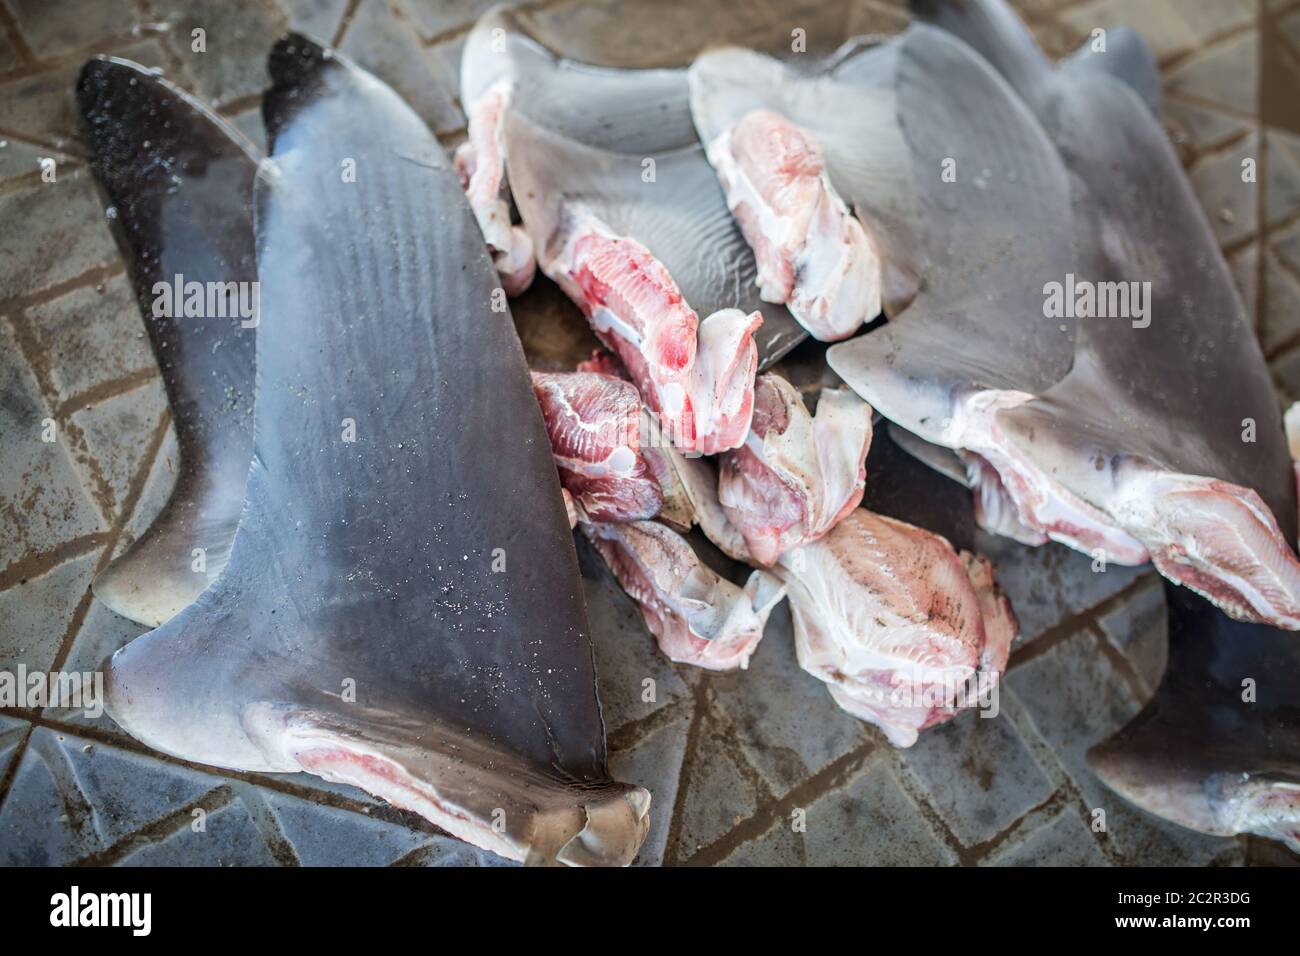 Haie Fins aus illegaler Fischerei, bedrohte Arten. Stockfoto